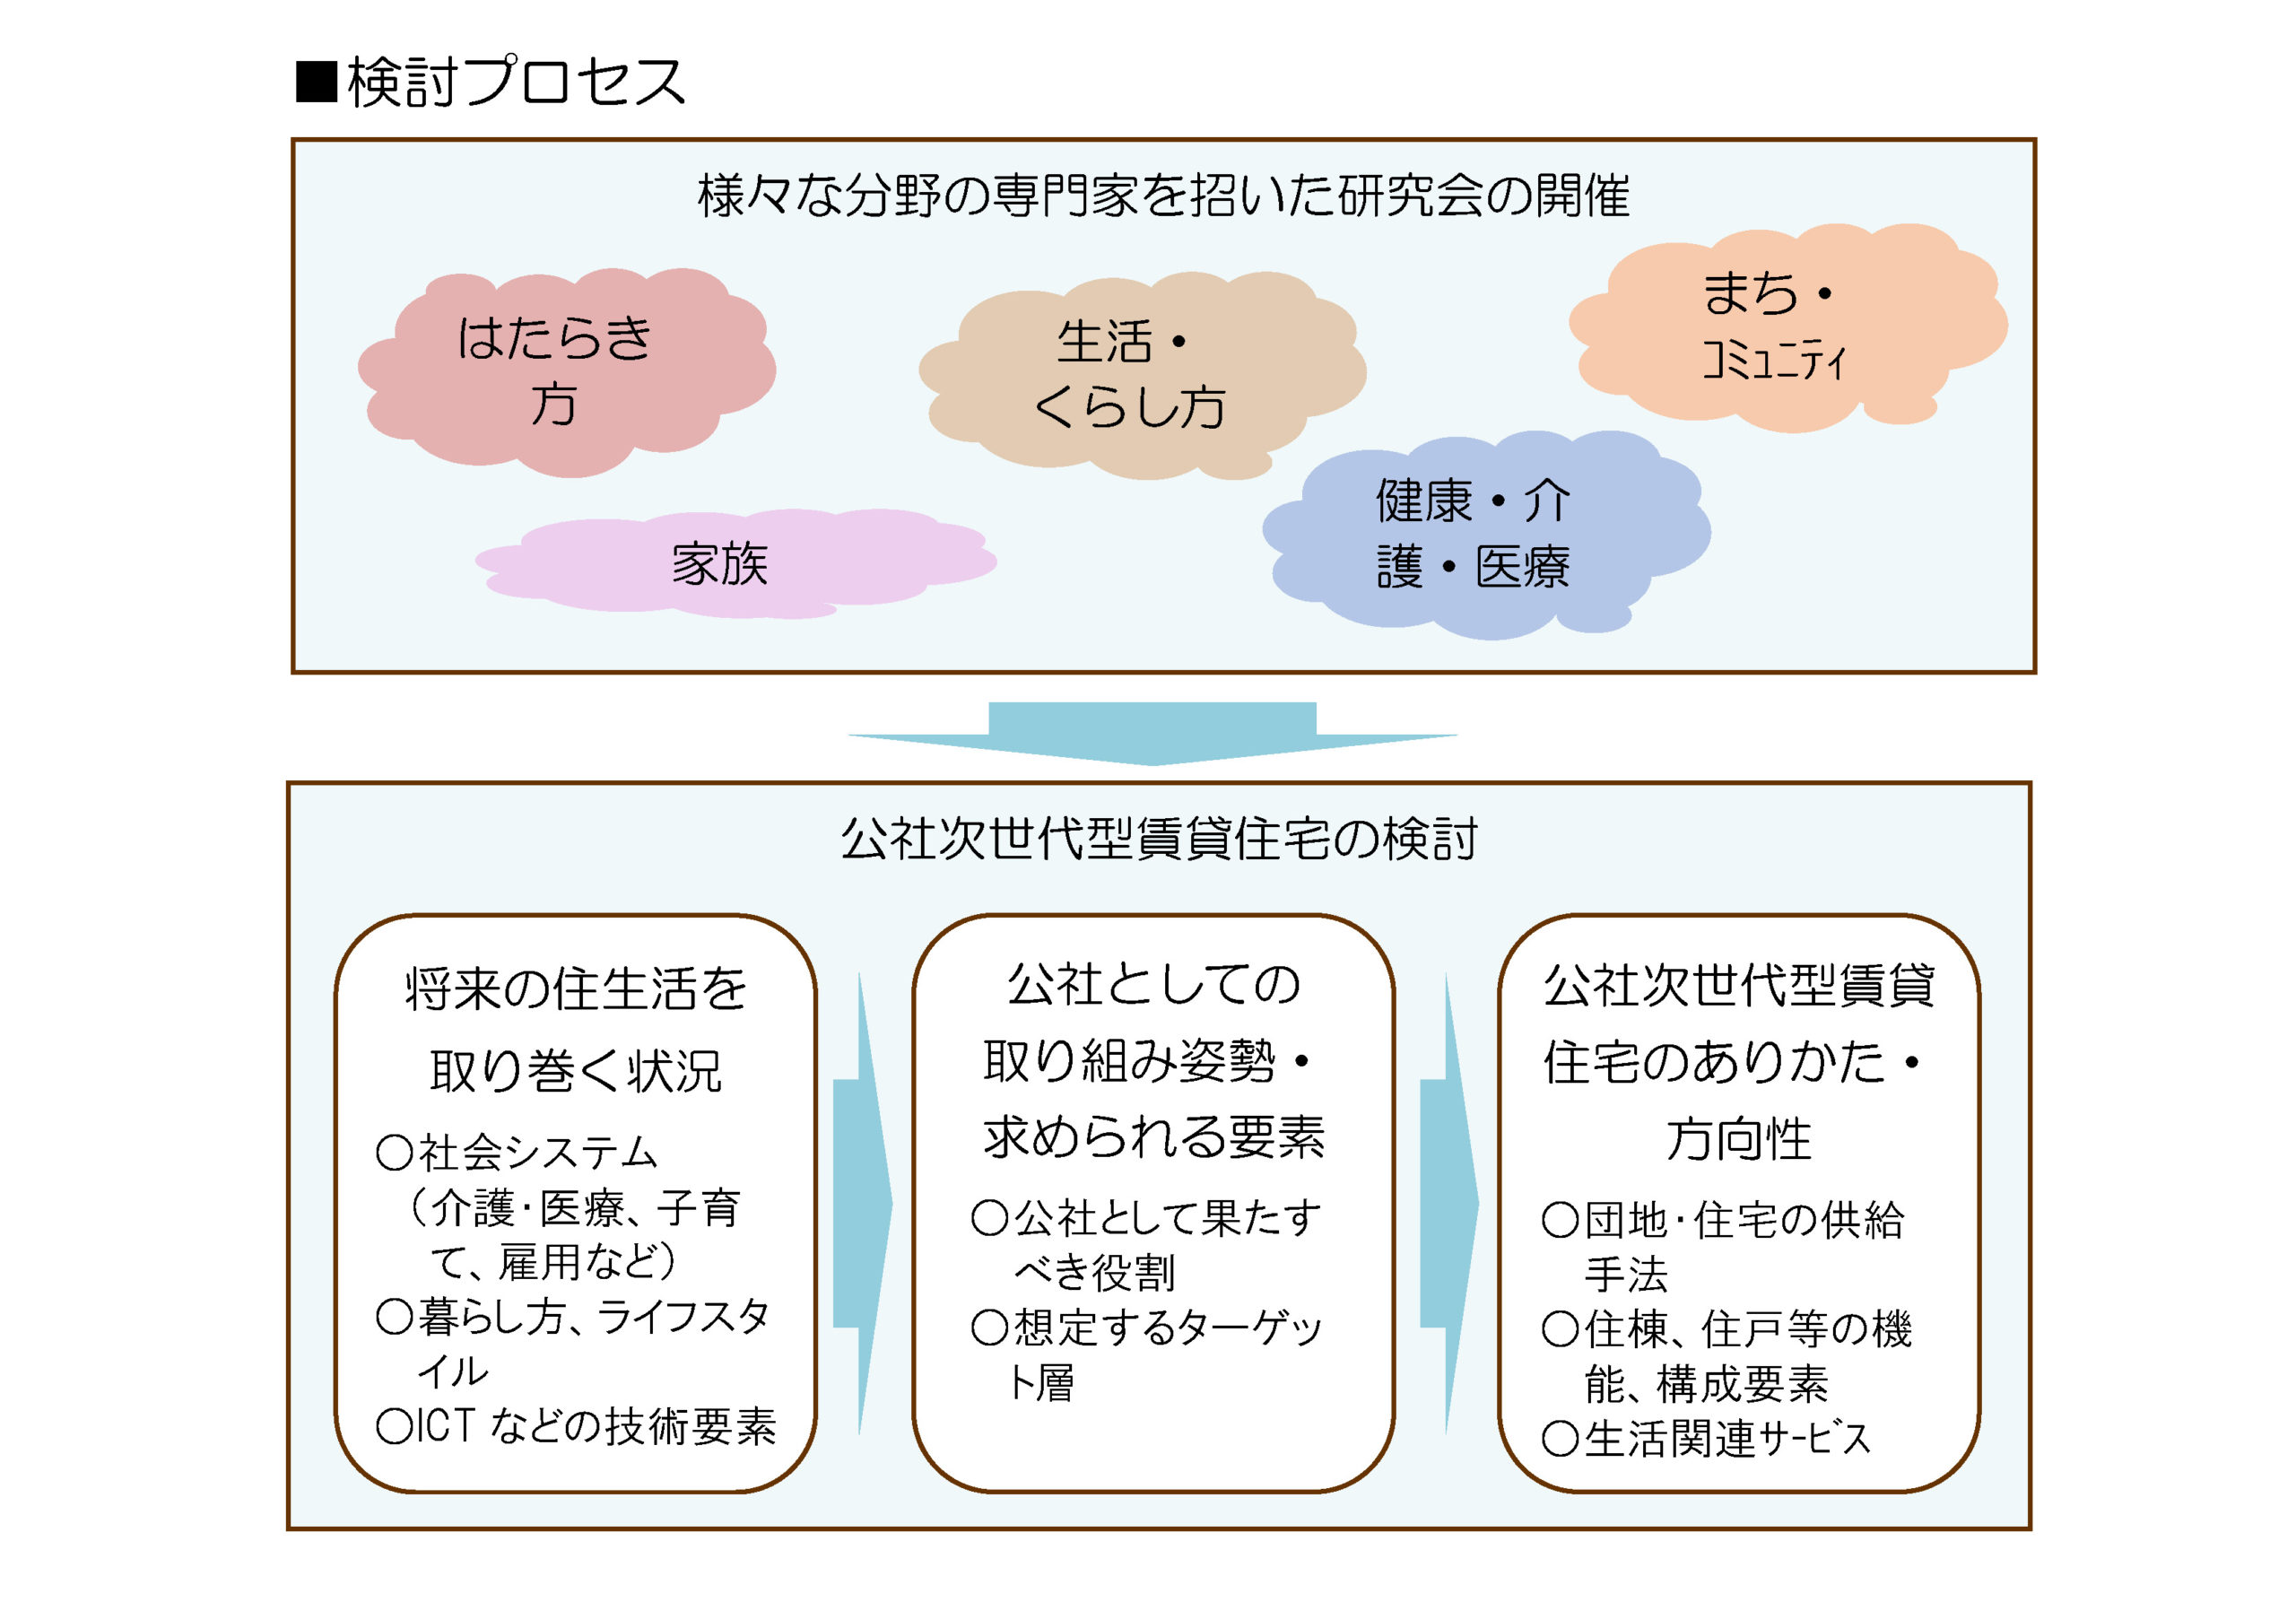 大阪府住宅供給公社における次世代住宅のあり方検討